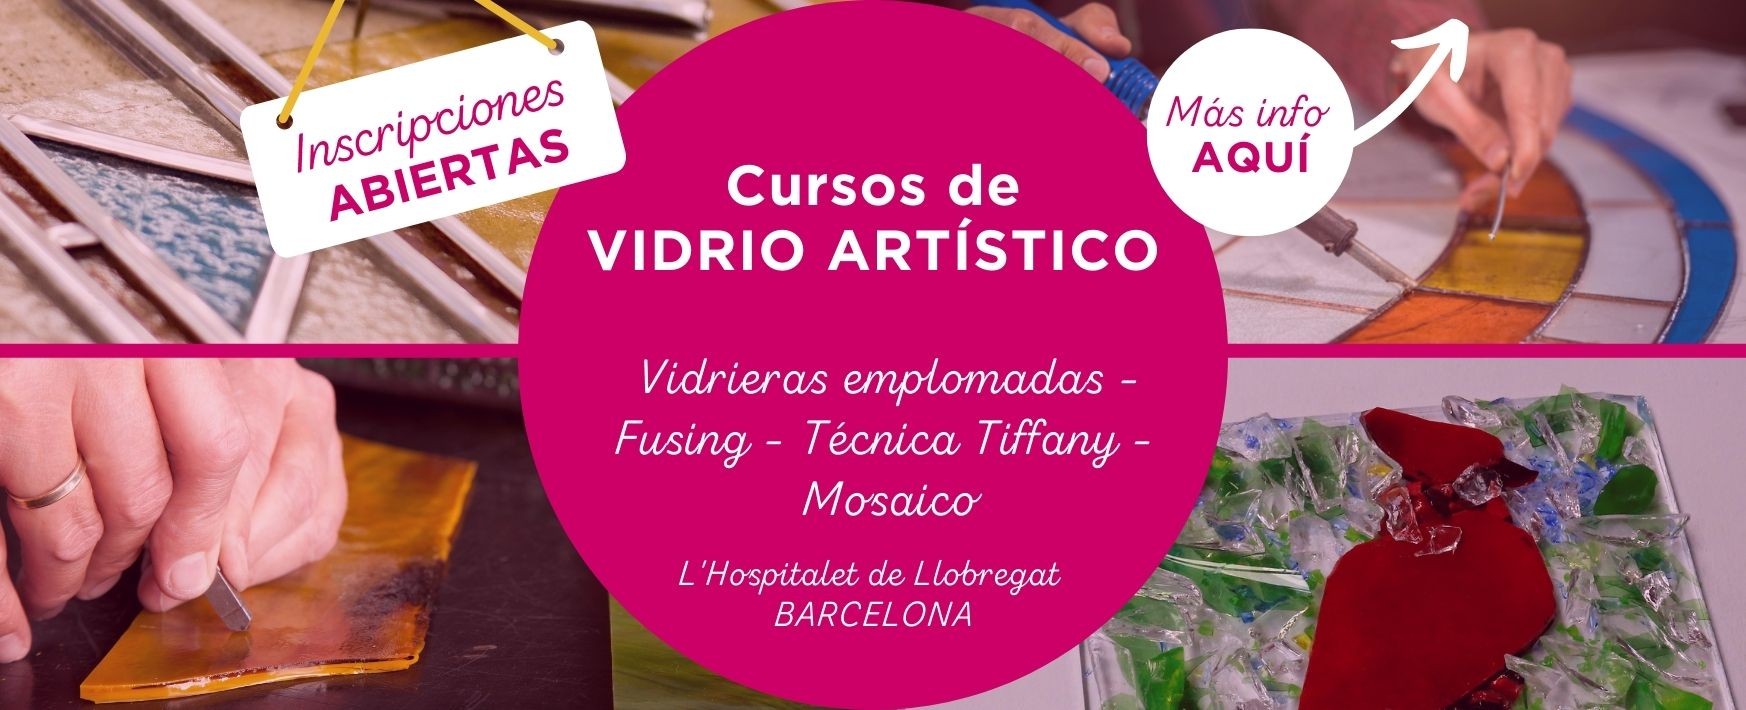 Cursos de vidrio artístico Barcelona